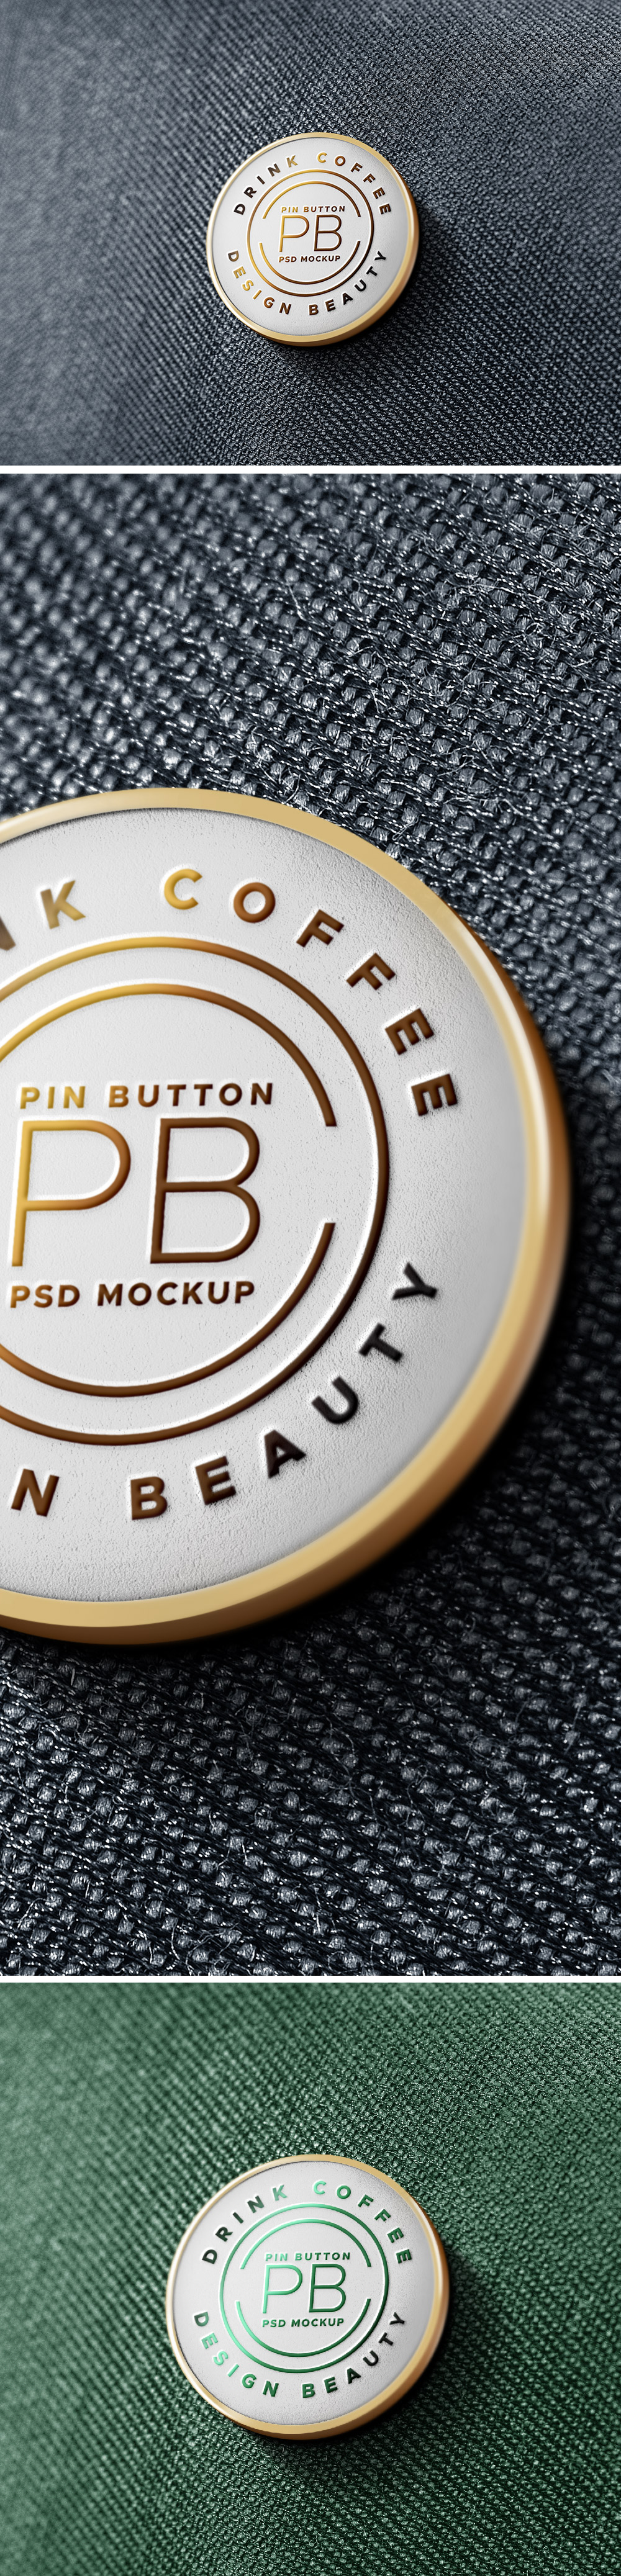 Pin Badge Mockup PSD